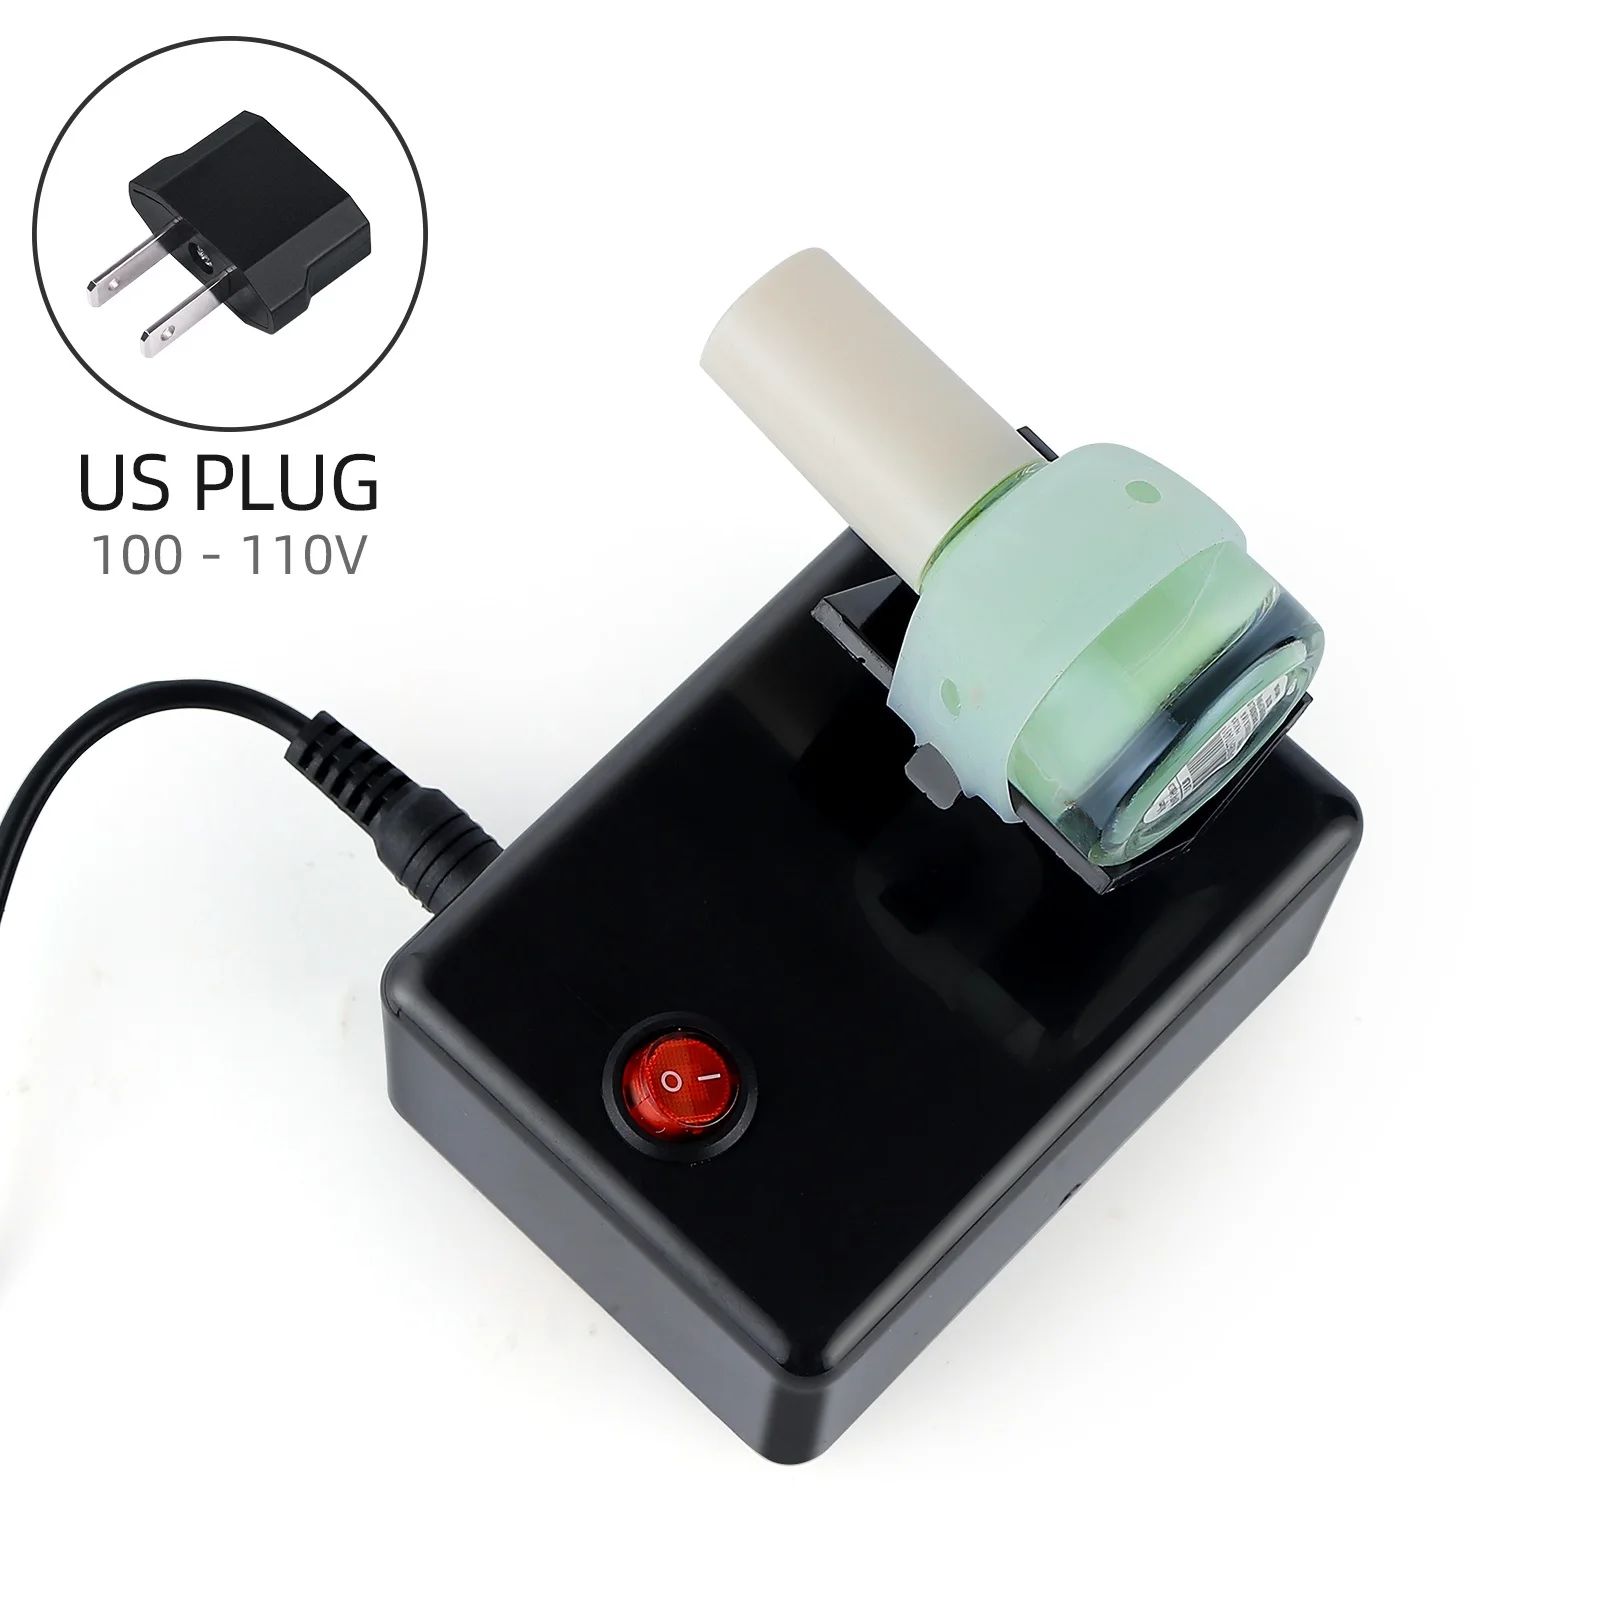 Plug américain (100-110V)